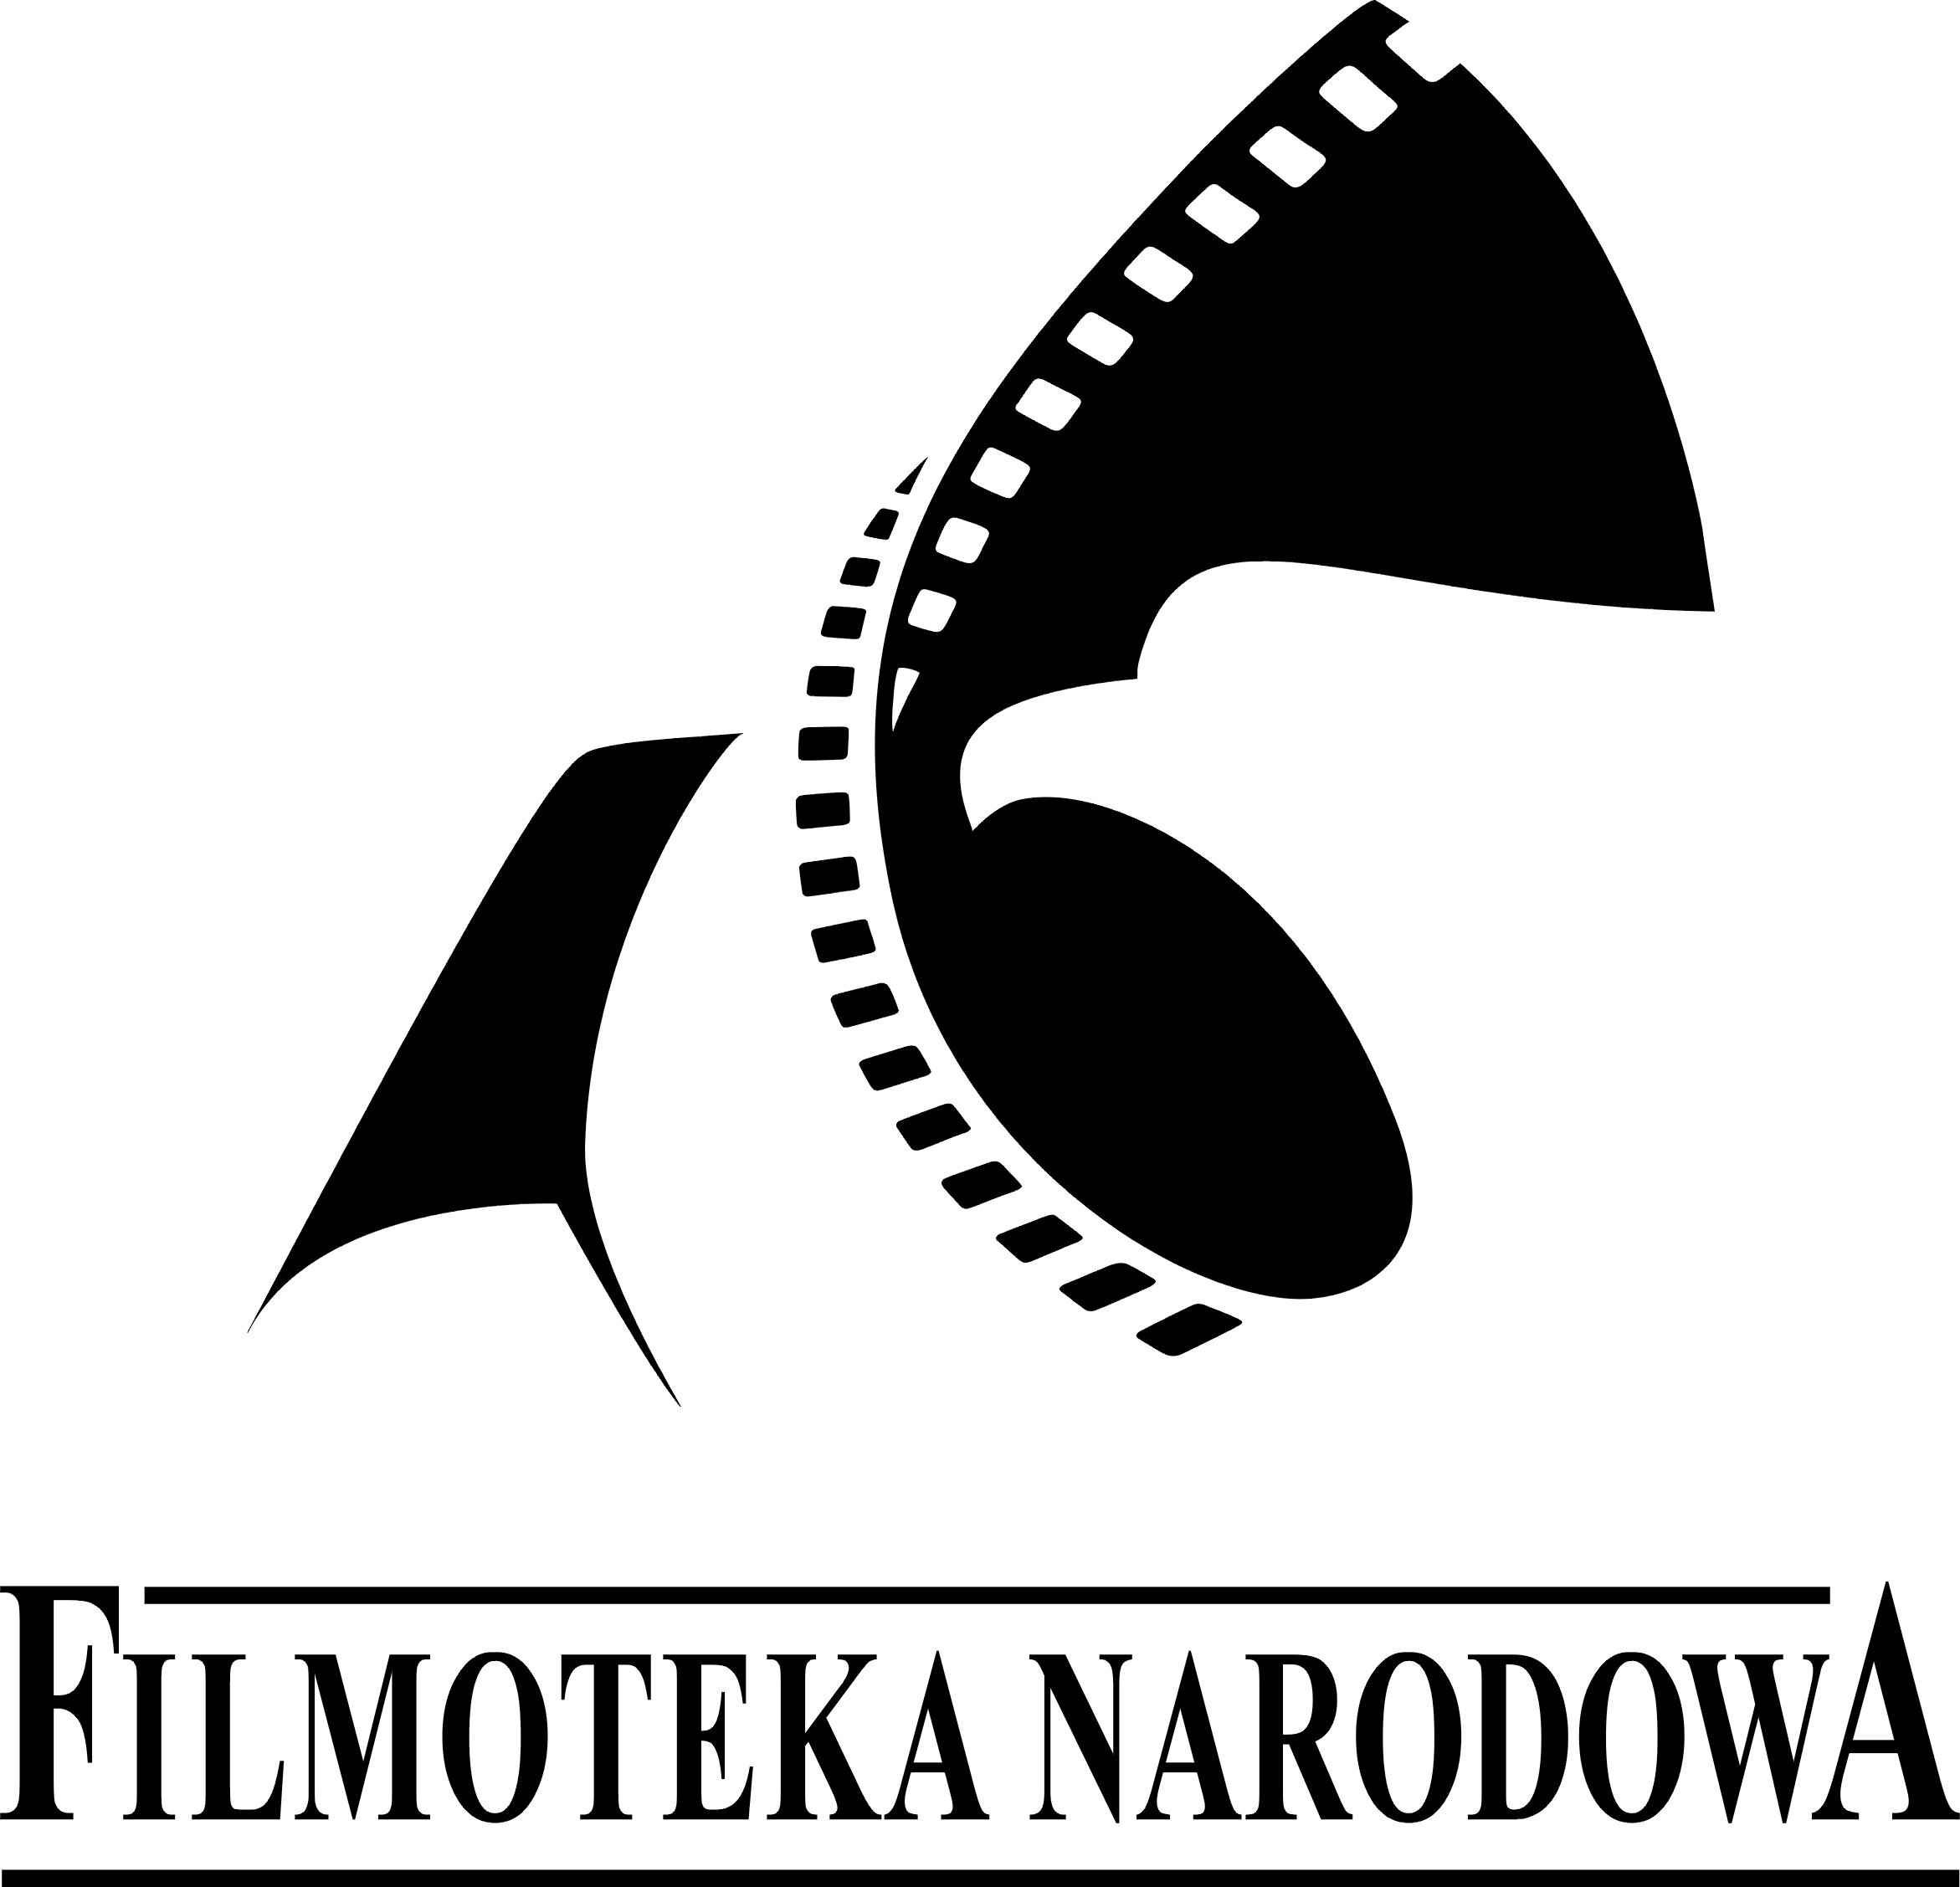 Cennik Usług 1 Filmoteki Narodowej (FN) Obowiązuje od dnia 02 grudnia 2008r. Załącznik do zarządzenia nr17 Dyrektora Filmoteki Narodowej z dnia 02 grudnia 2008r.